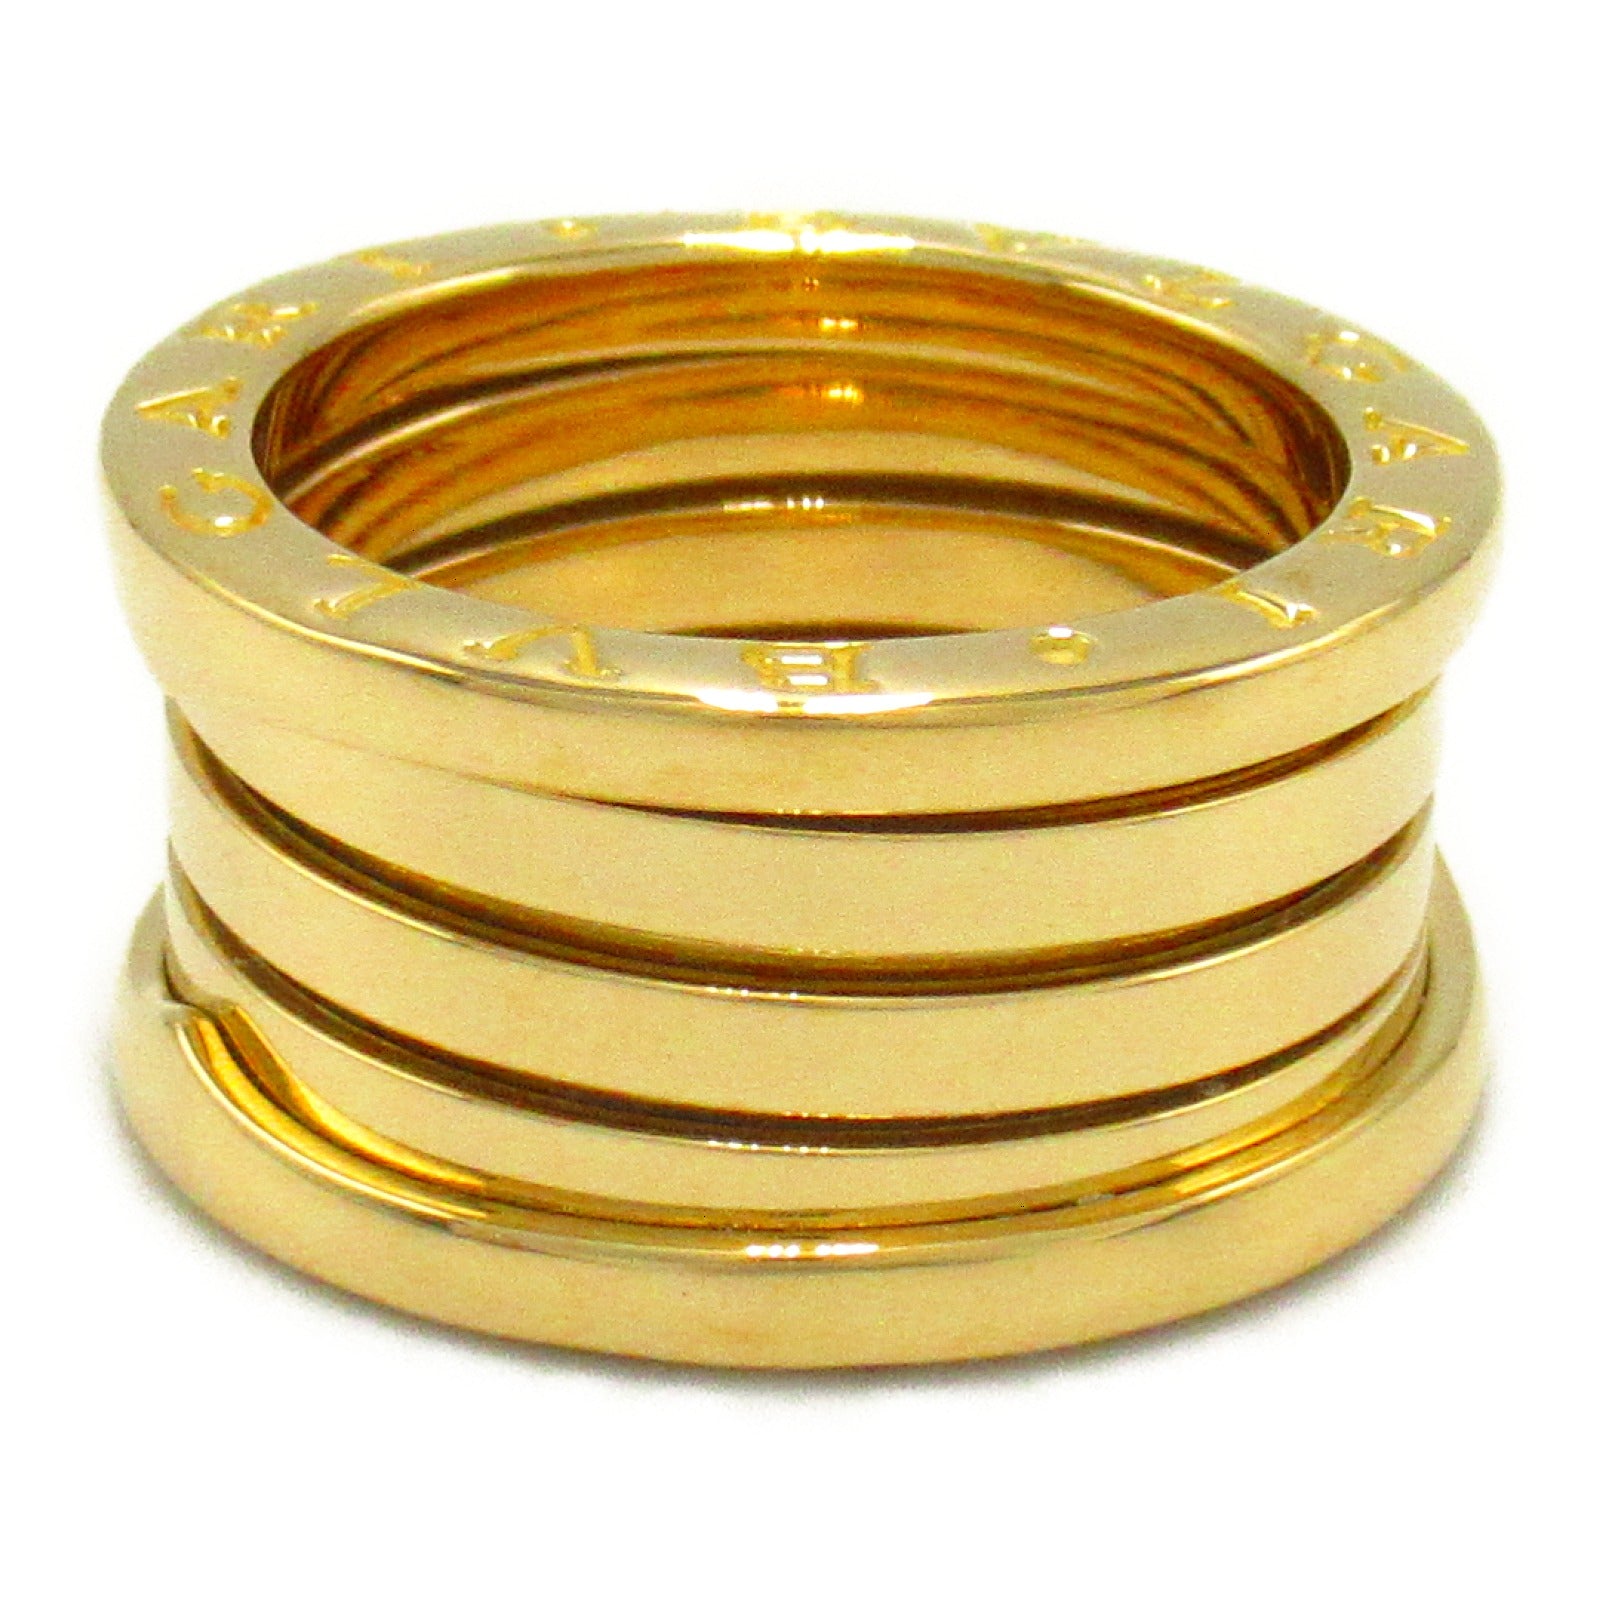 Bulgari BVLGARI B-zero1 Beezero One Ring 4 Band Ring Ring Ring Jewelry K18 (Yellow G)  Gold